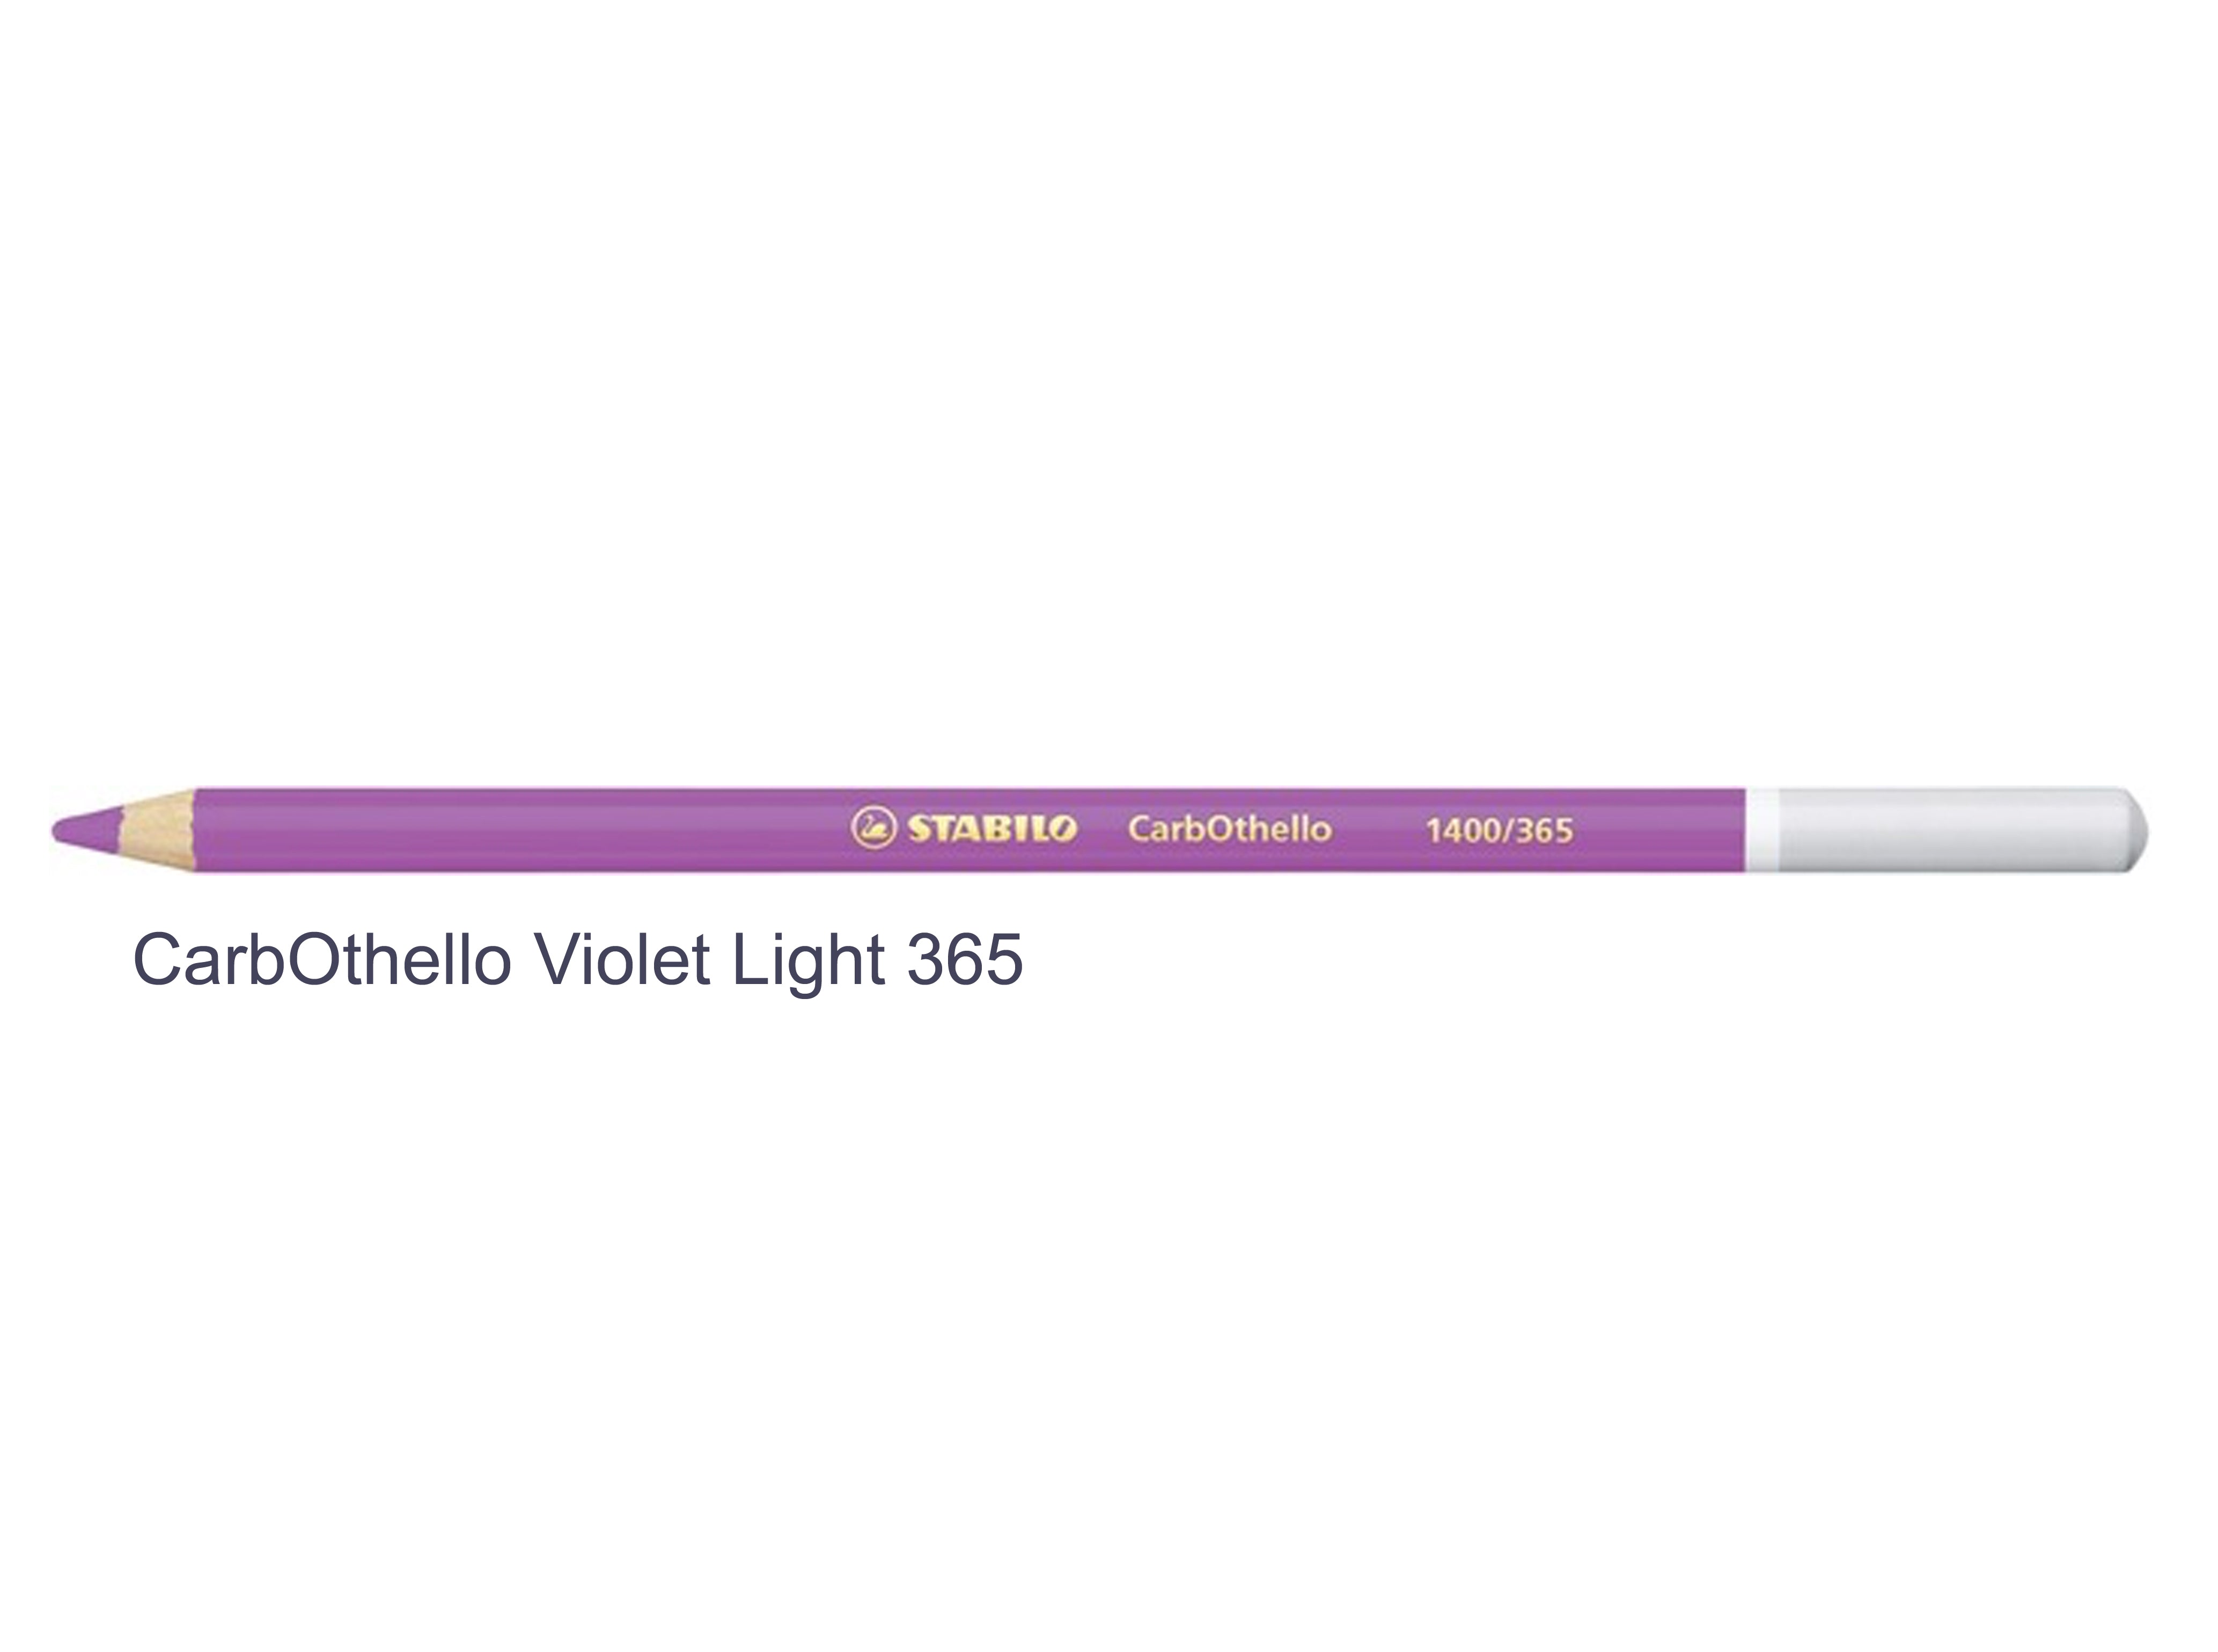 Violet light 365 STABILO CarbOthello chalk-pastel pencils